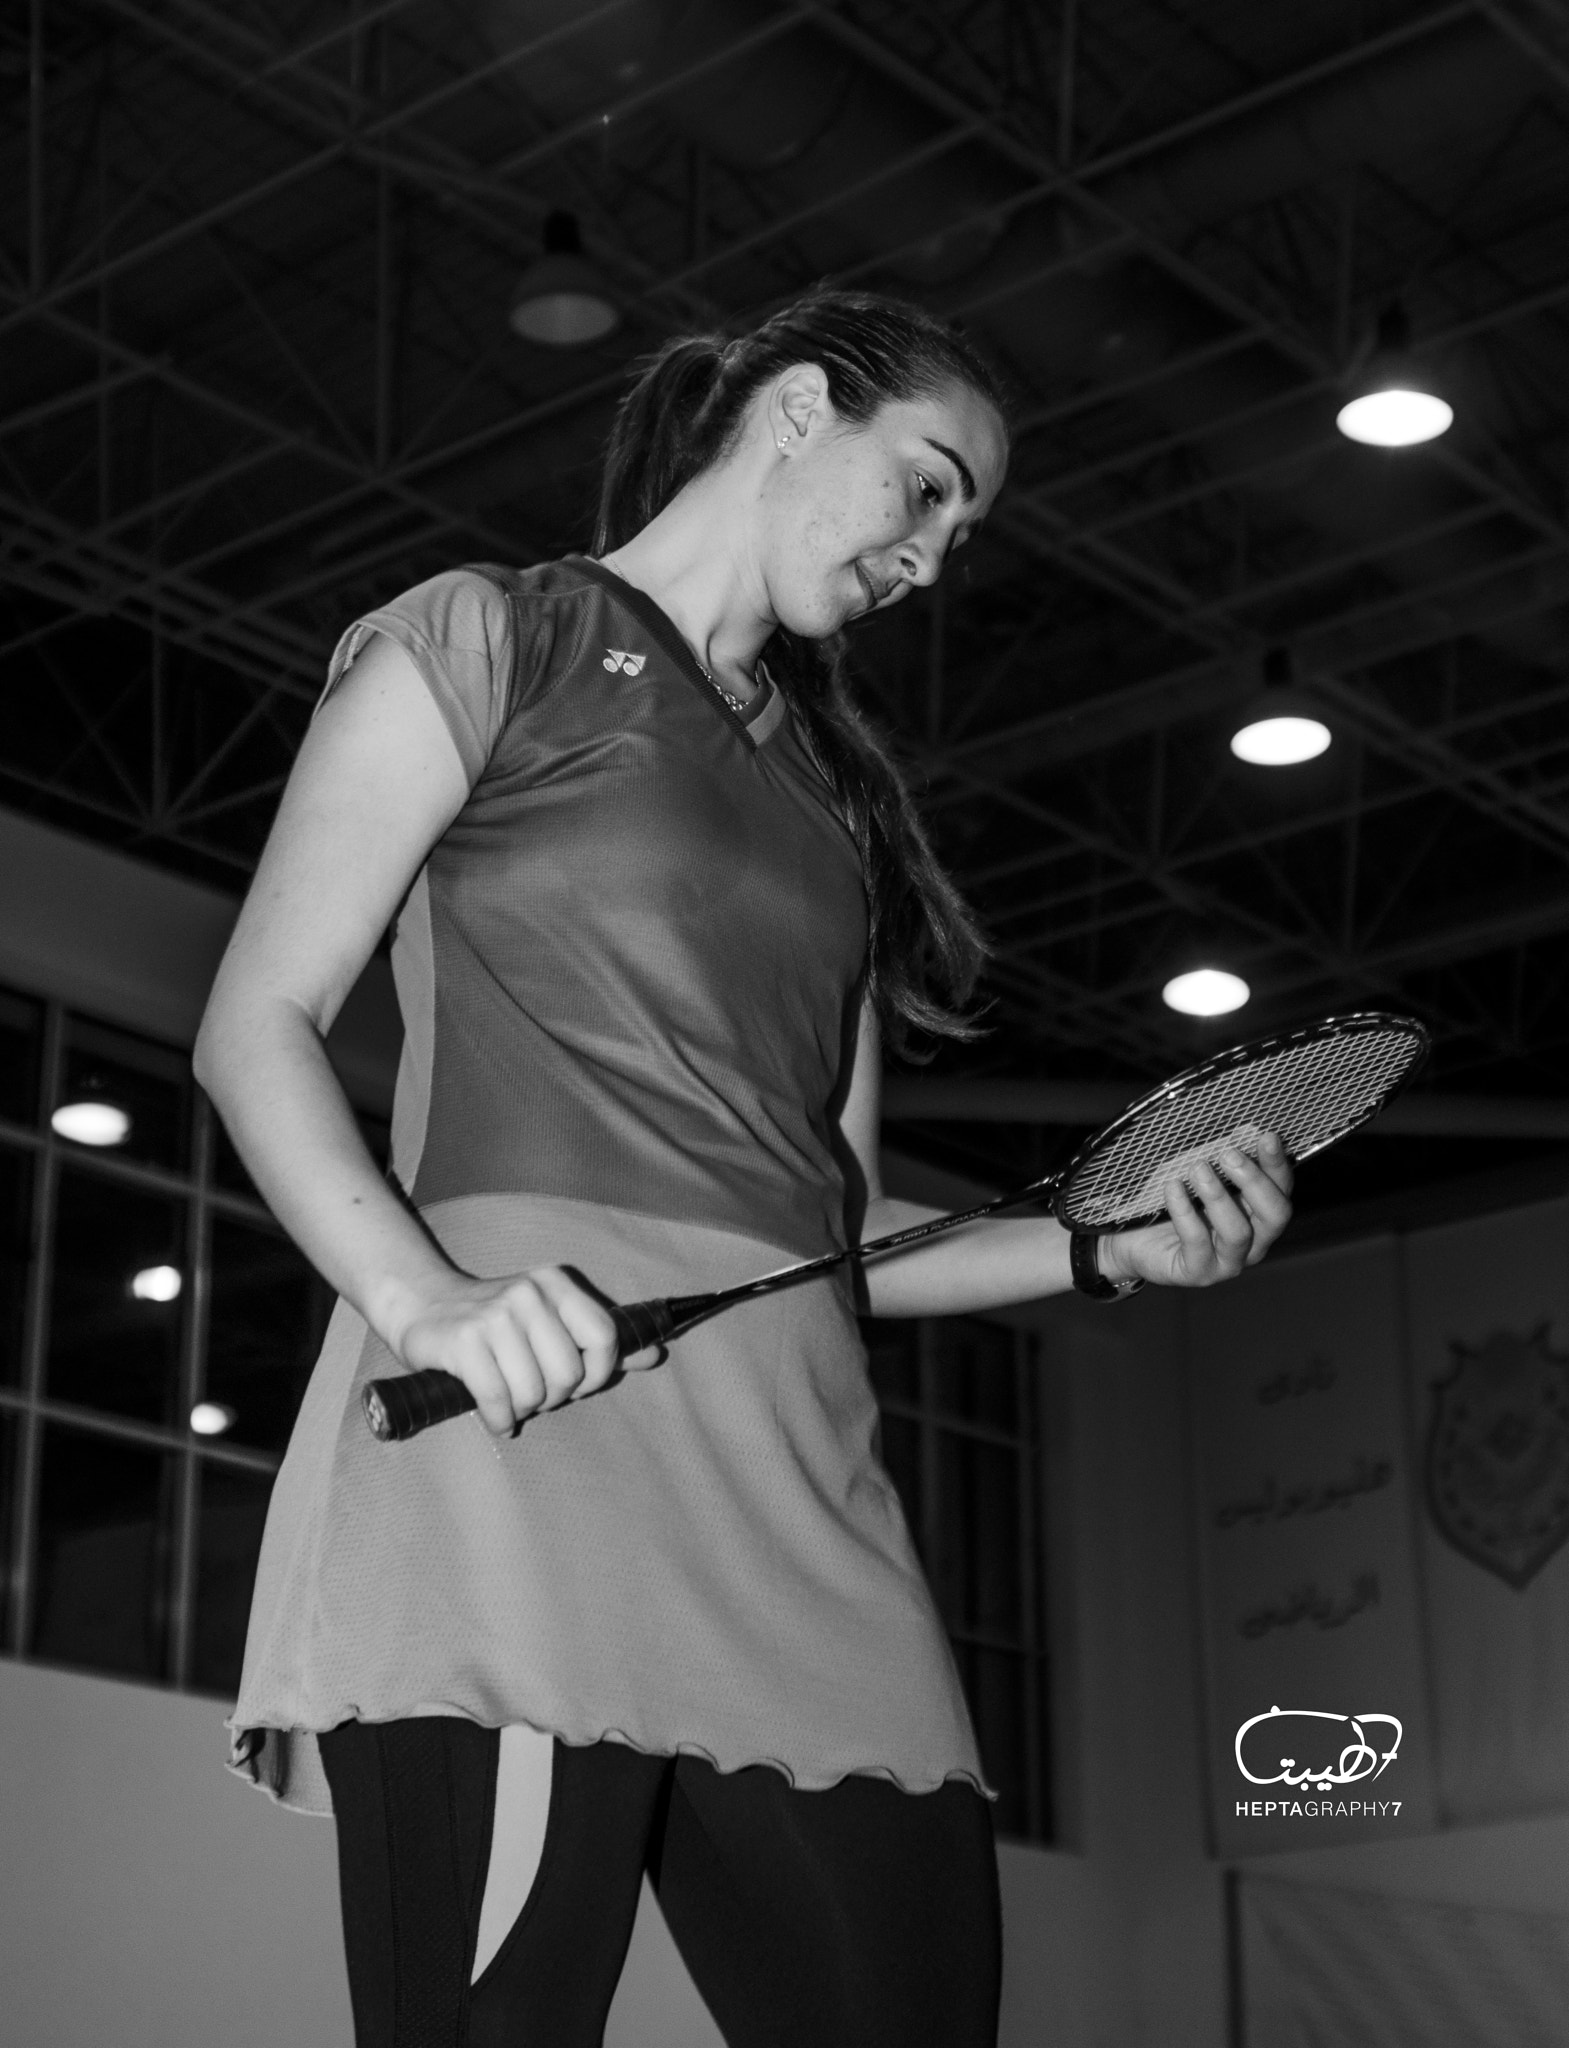 Nikon D90 + AF Zoom-Nikkor 35-135mm f/3.5-4.5 N sample photo. Badminton champion photography